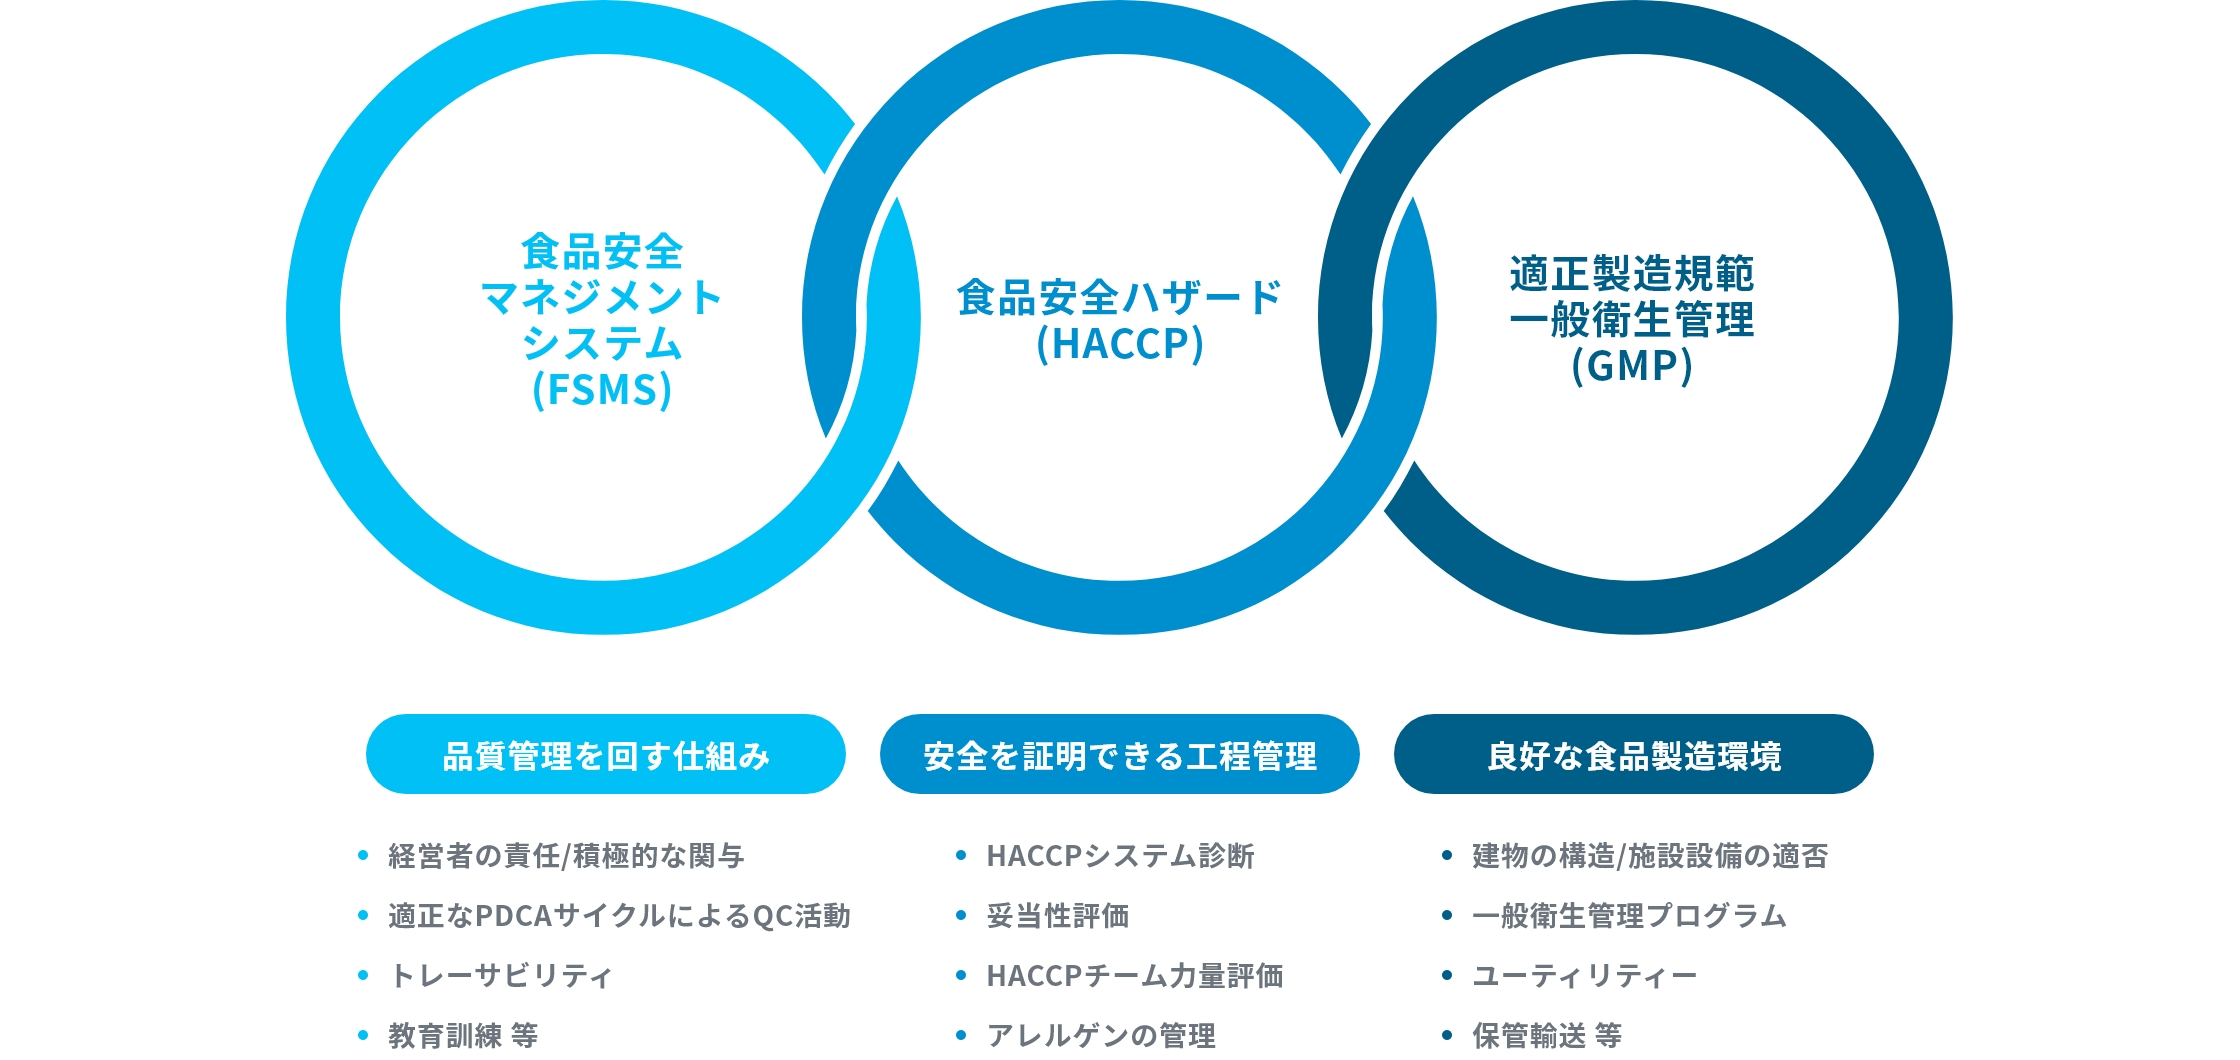 FSMS、Codex HACCP、GMP、3つの領域の管理手法の導入関係図